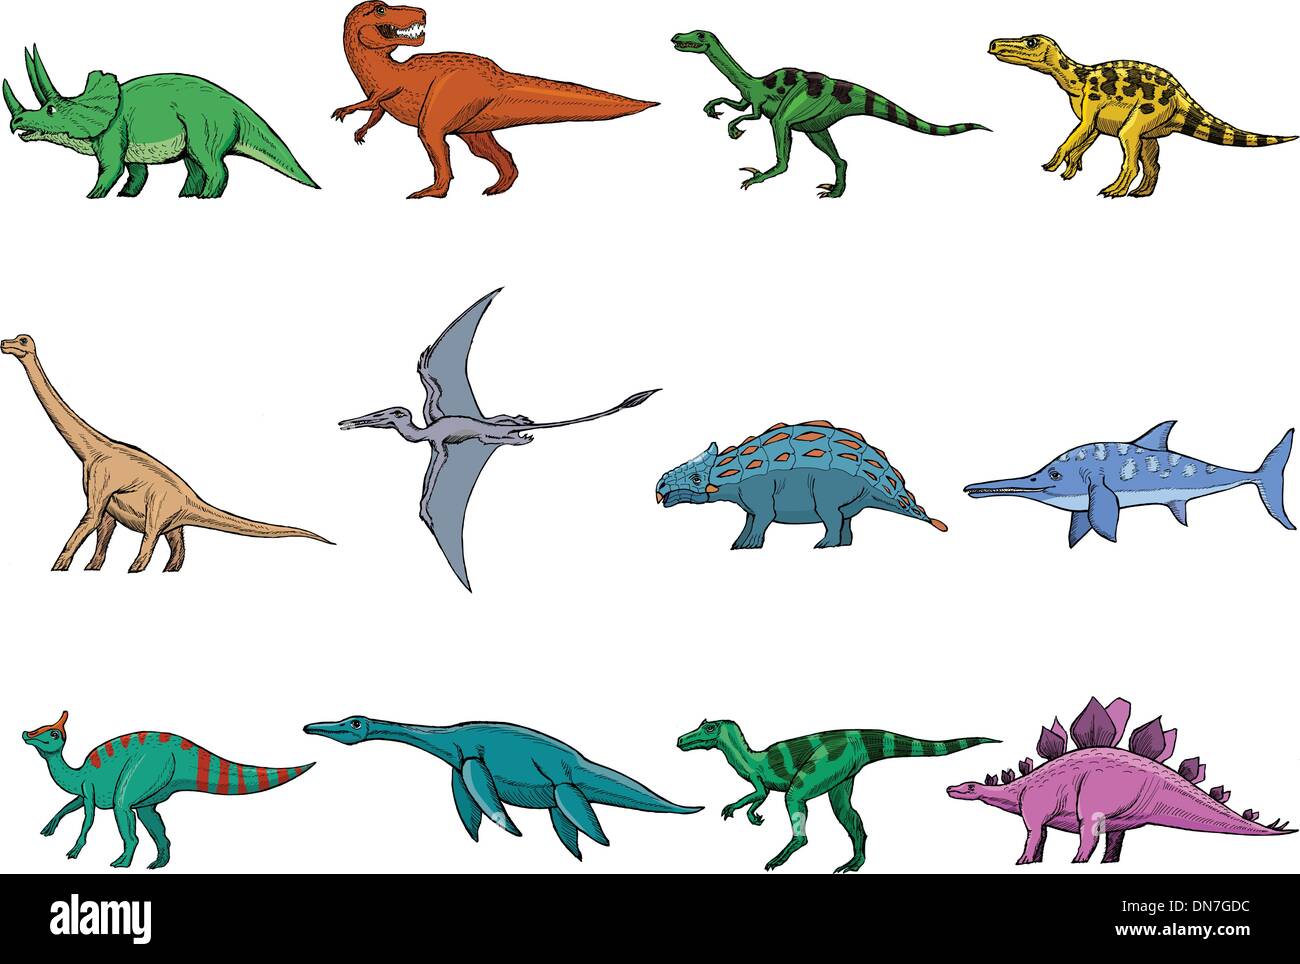 Разные динозавры в ряд